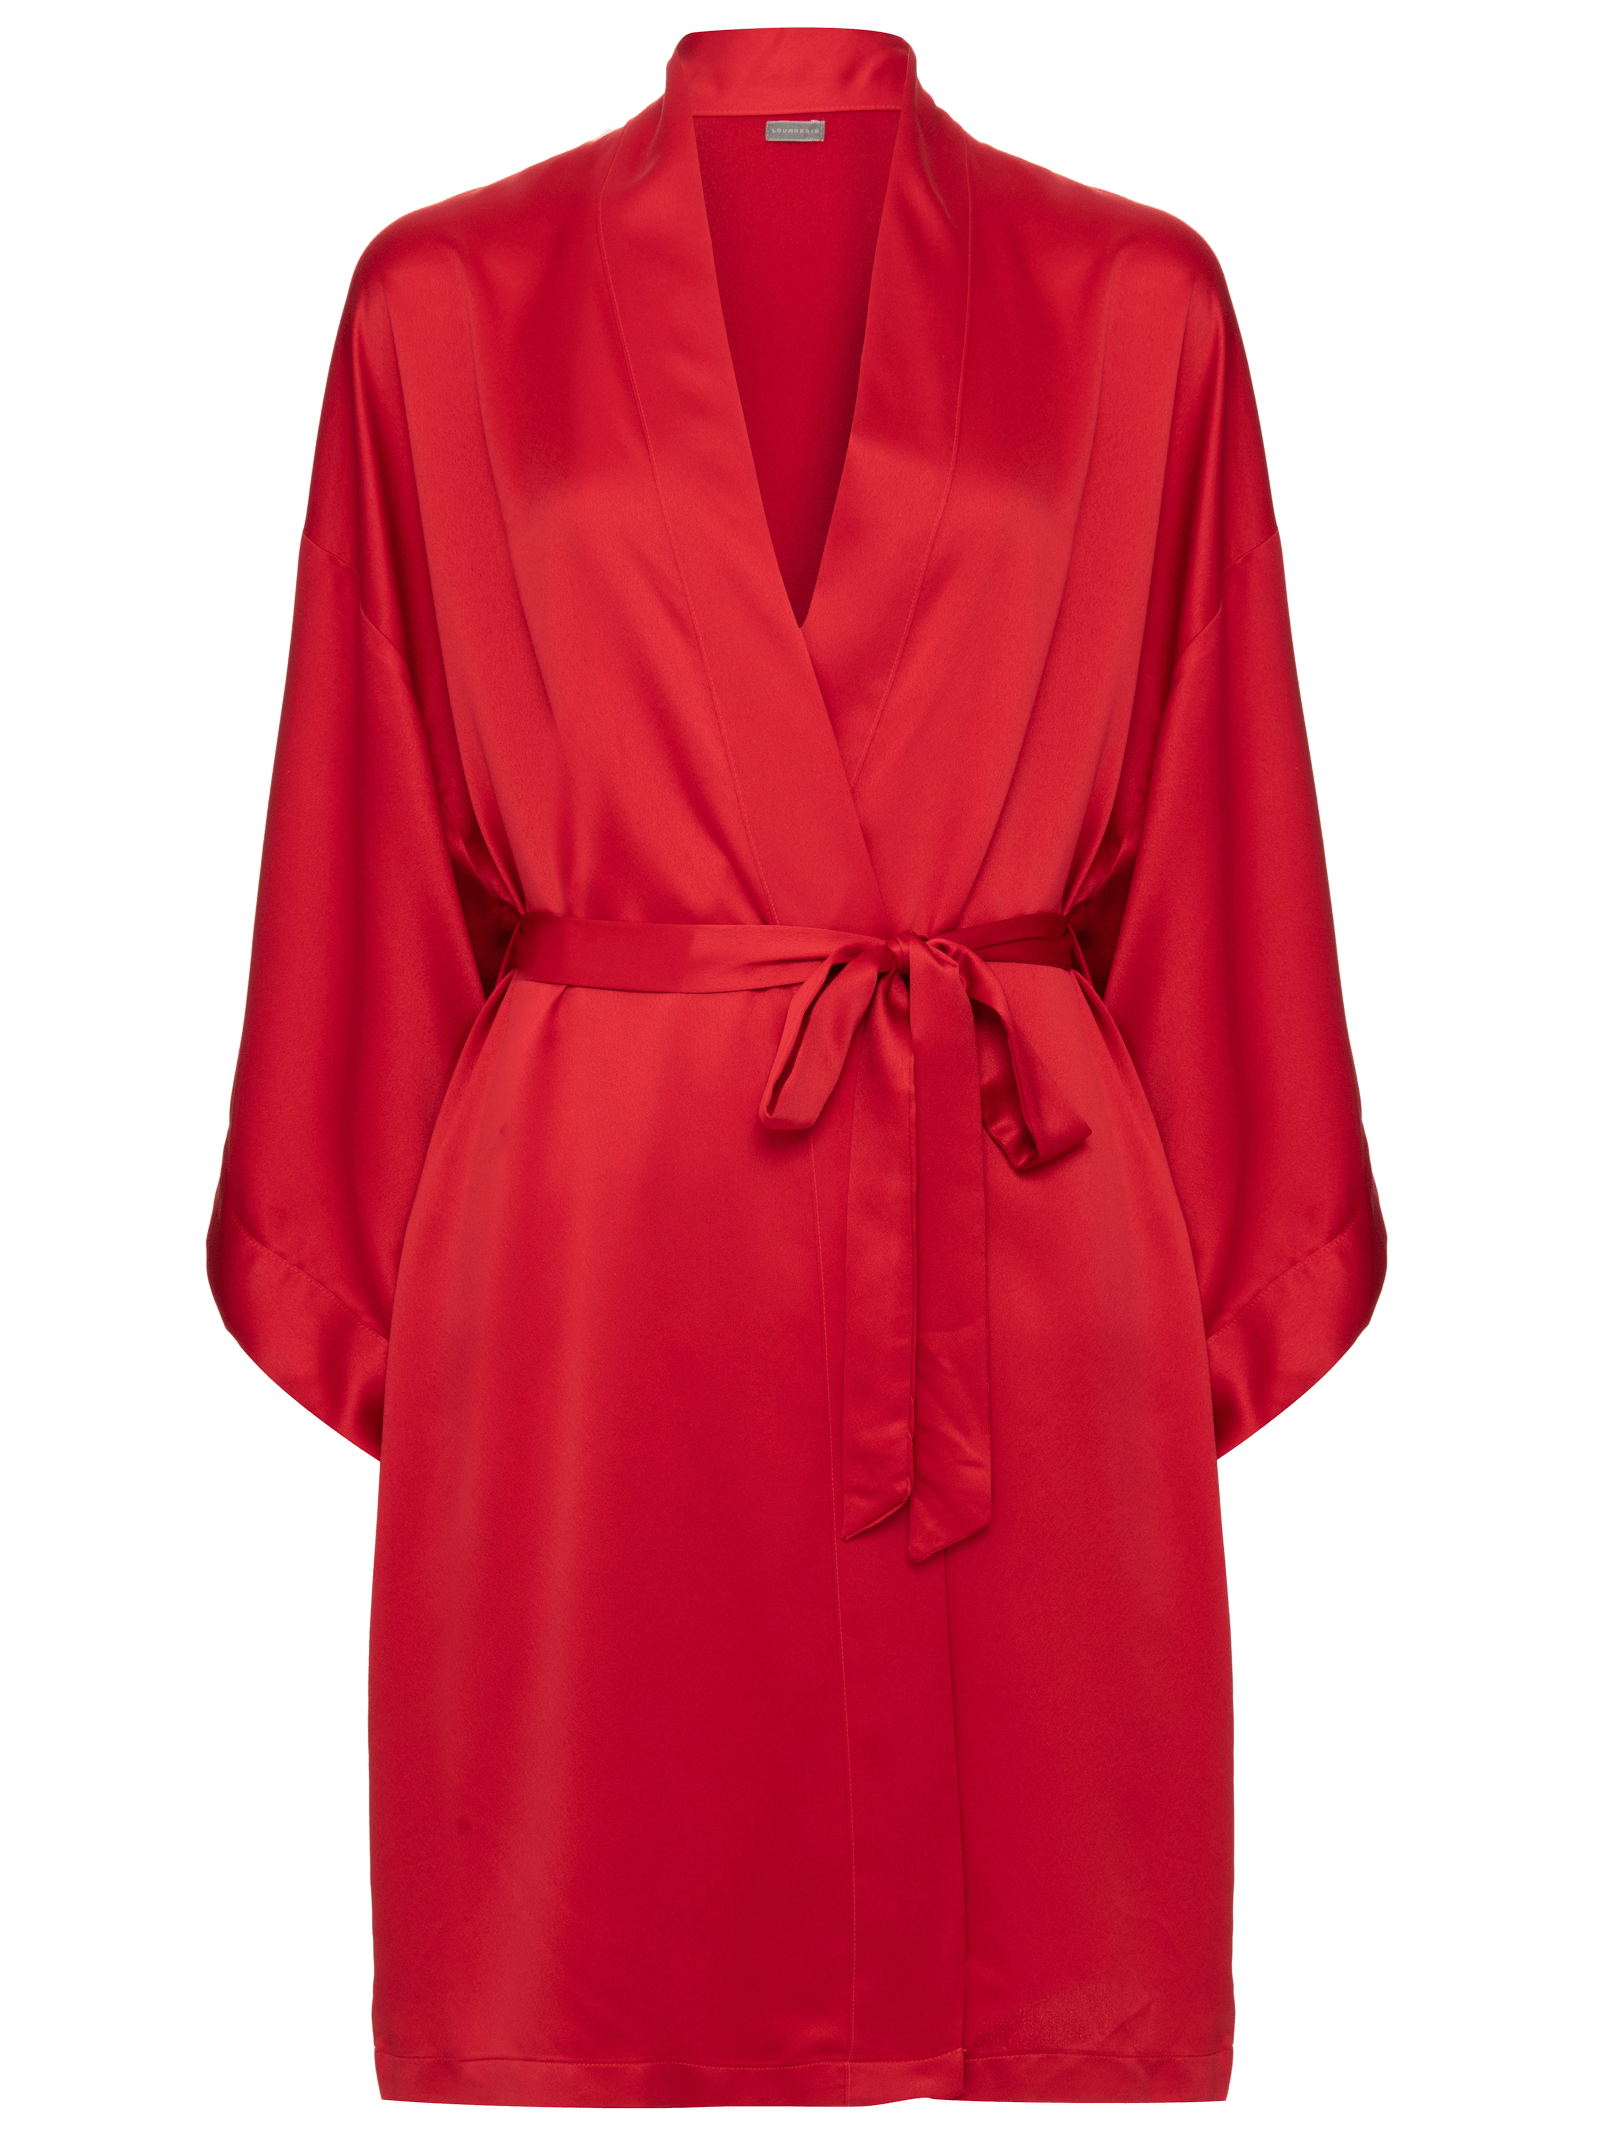 Robe Longo Em Liganete Com Detalhe Em Renda K07 - Compra Fácil